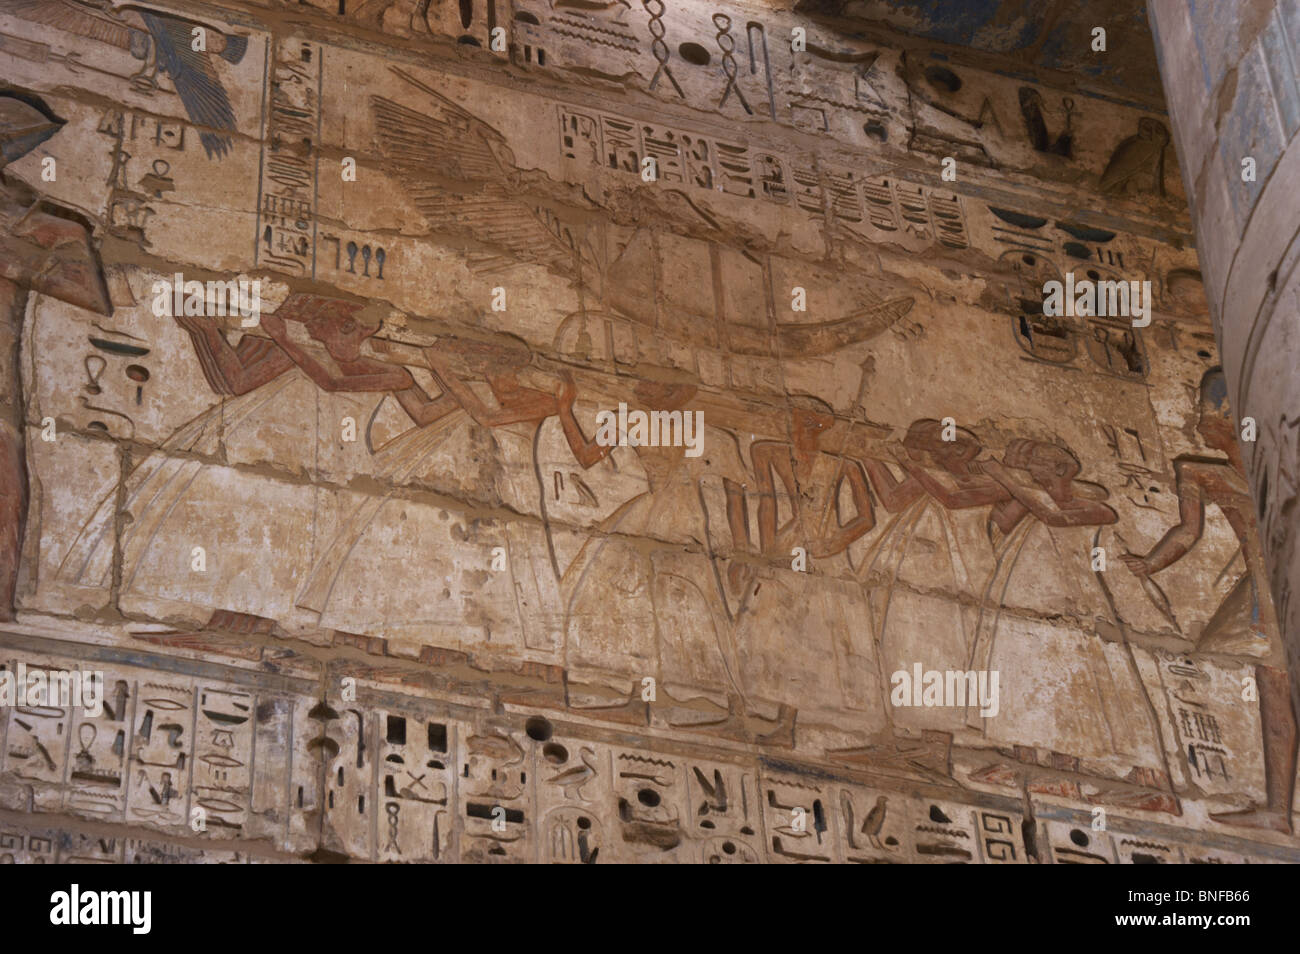 Tempio di Ramses III. La sacra barca solare portati dai sacerdoti. L'Egitto. Foto Stock